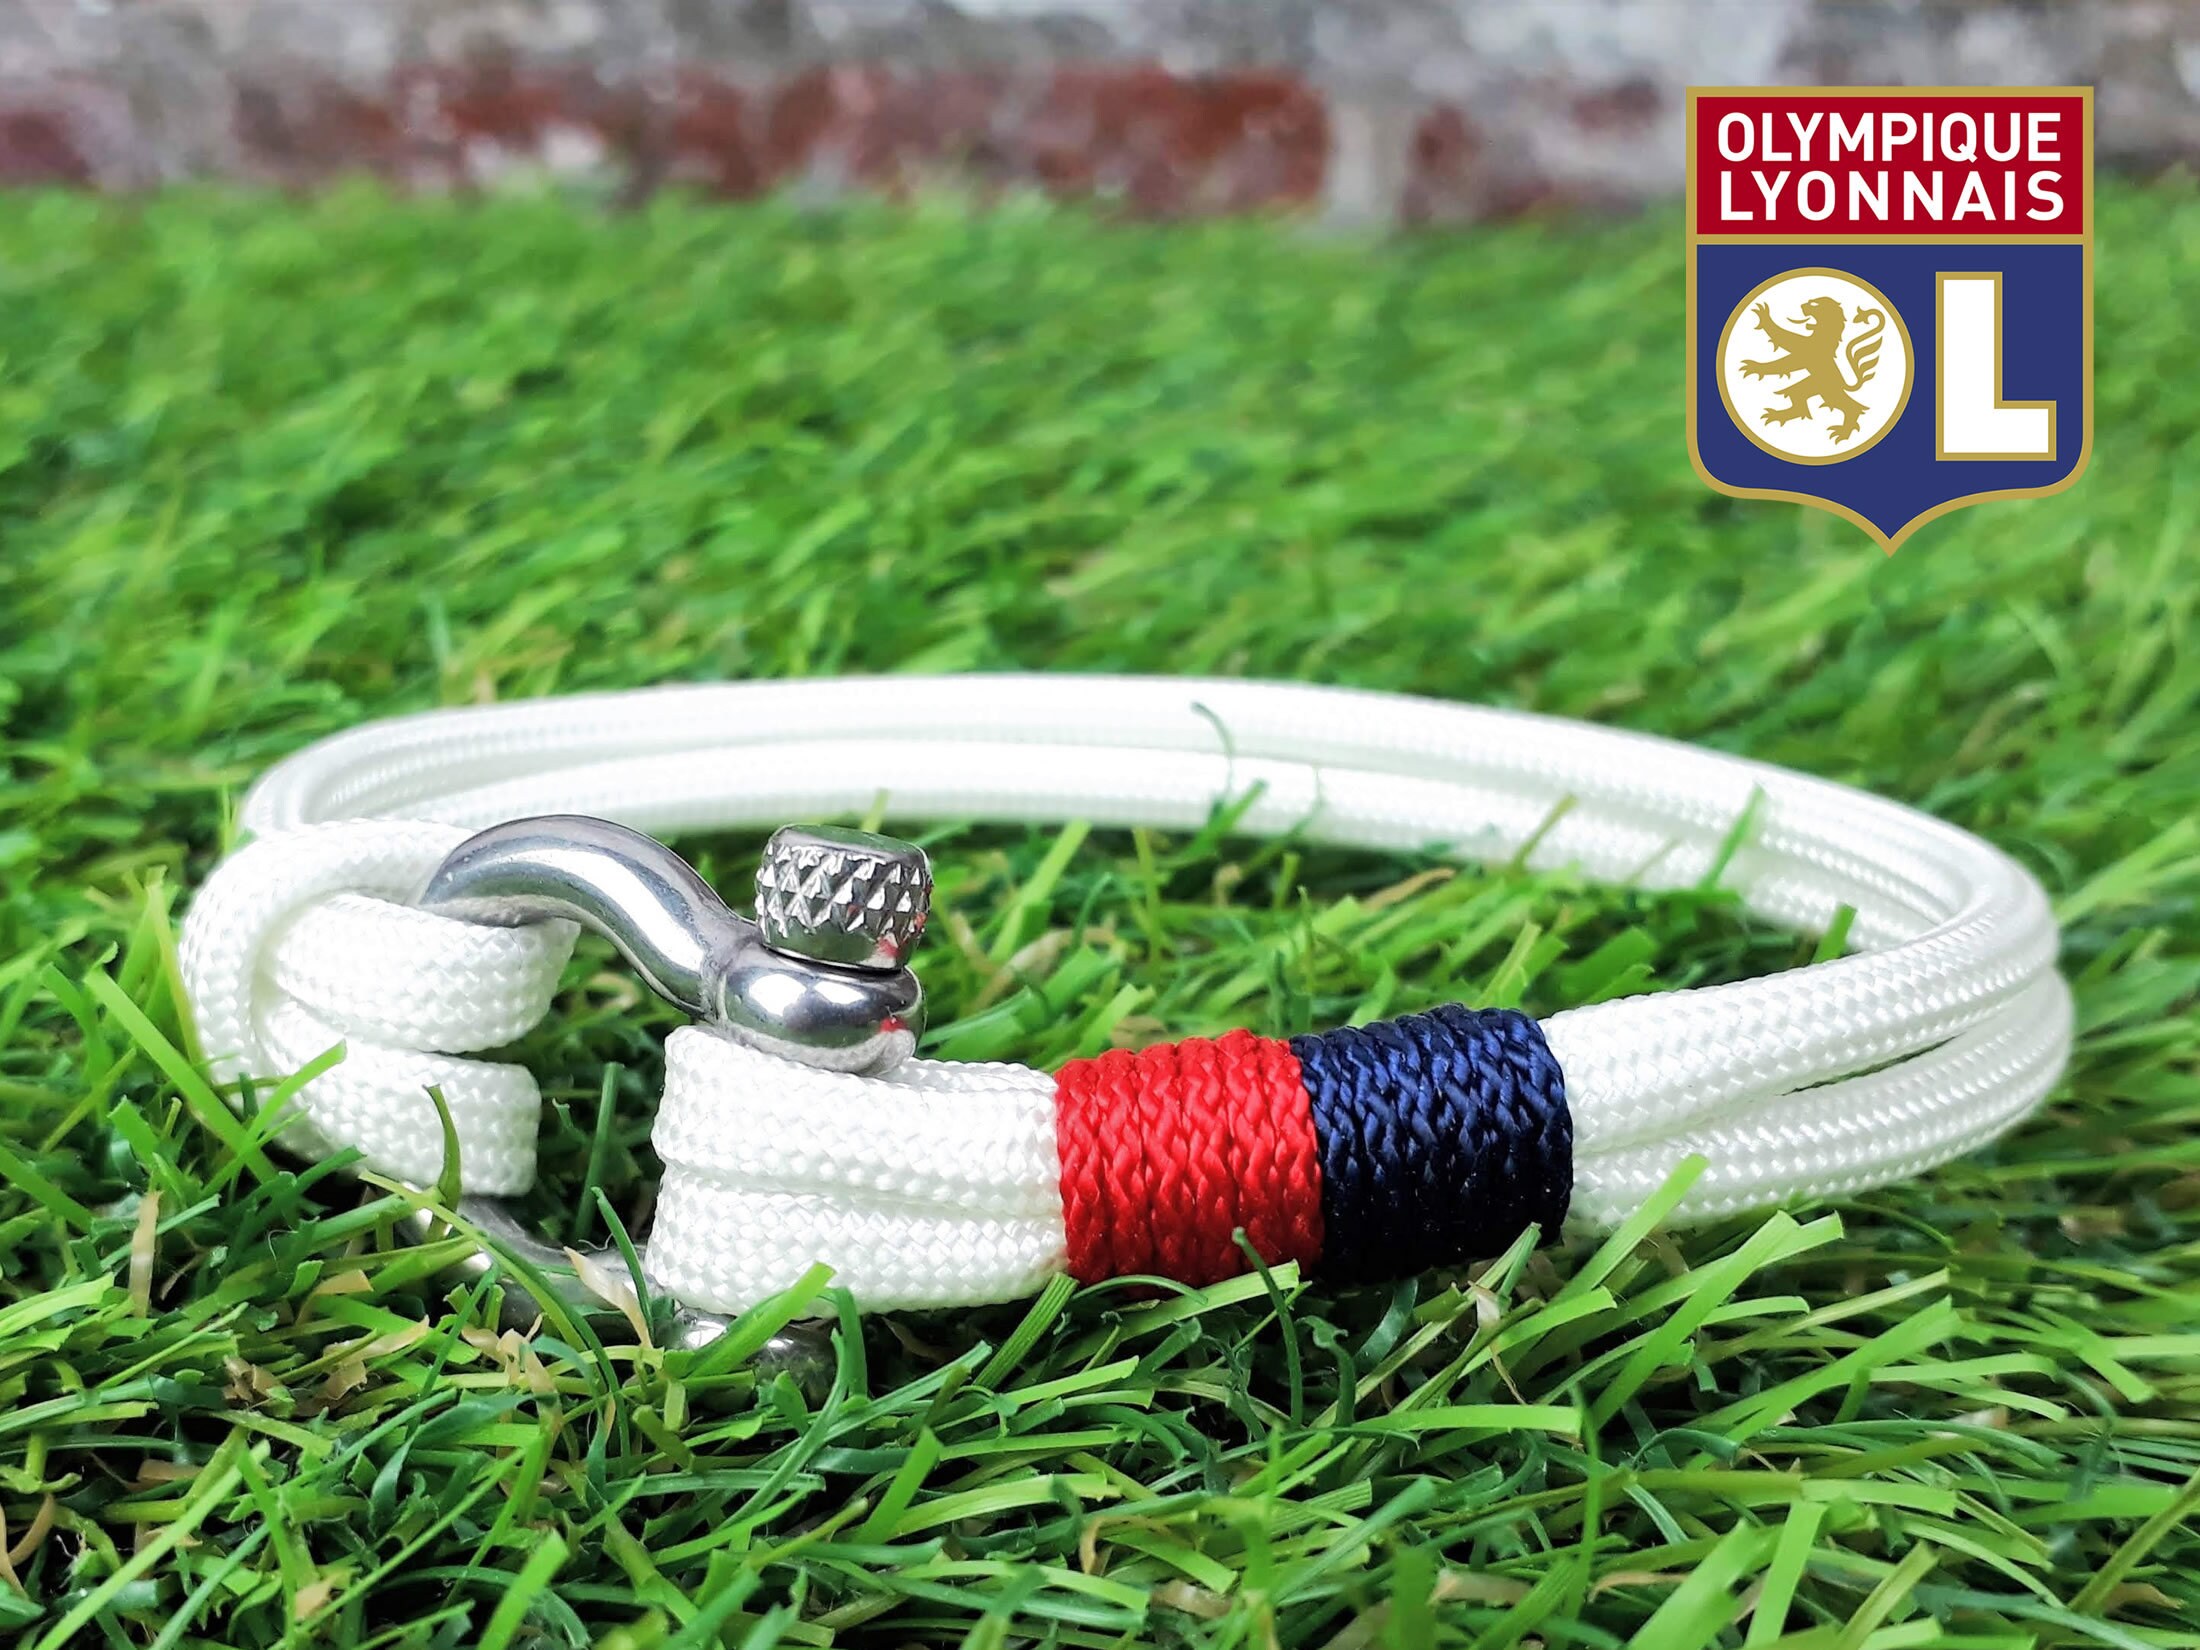 Bracelet football PSG sur mesure, Bracelet en corde pour supporter